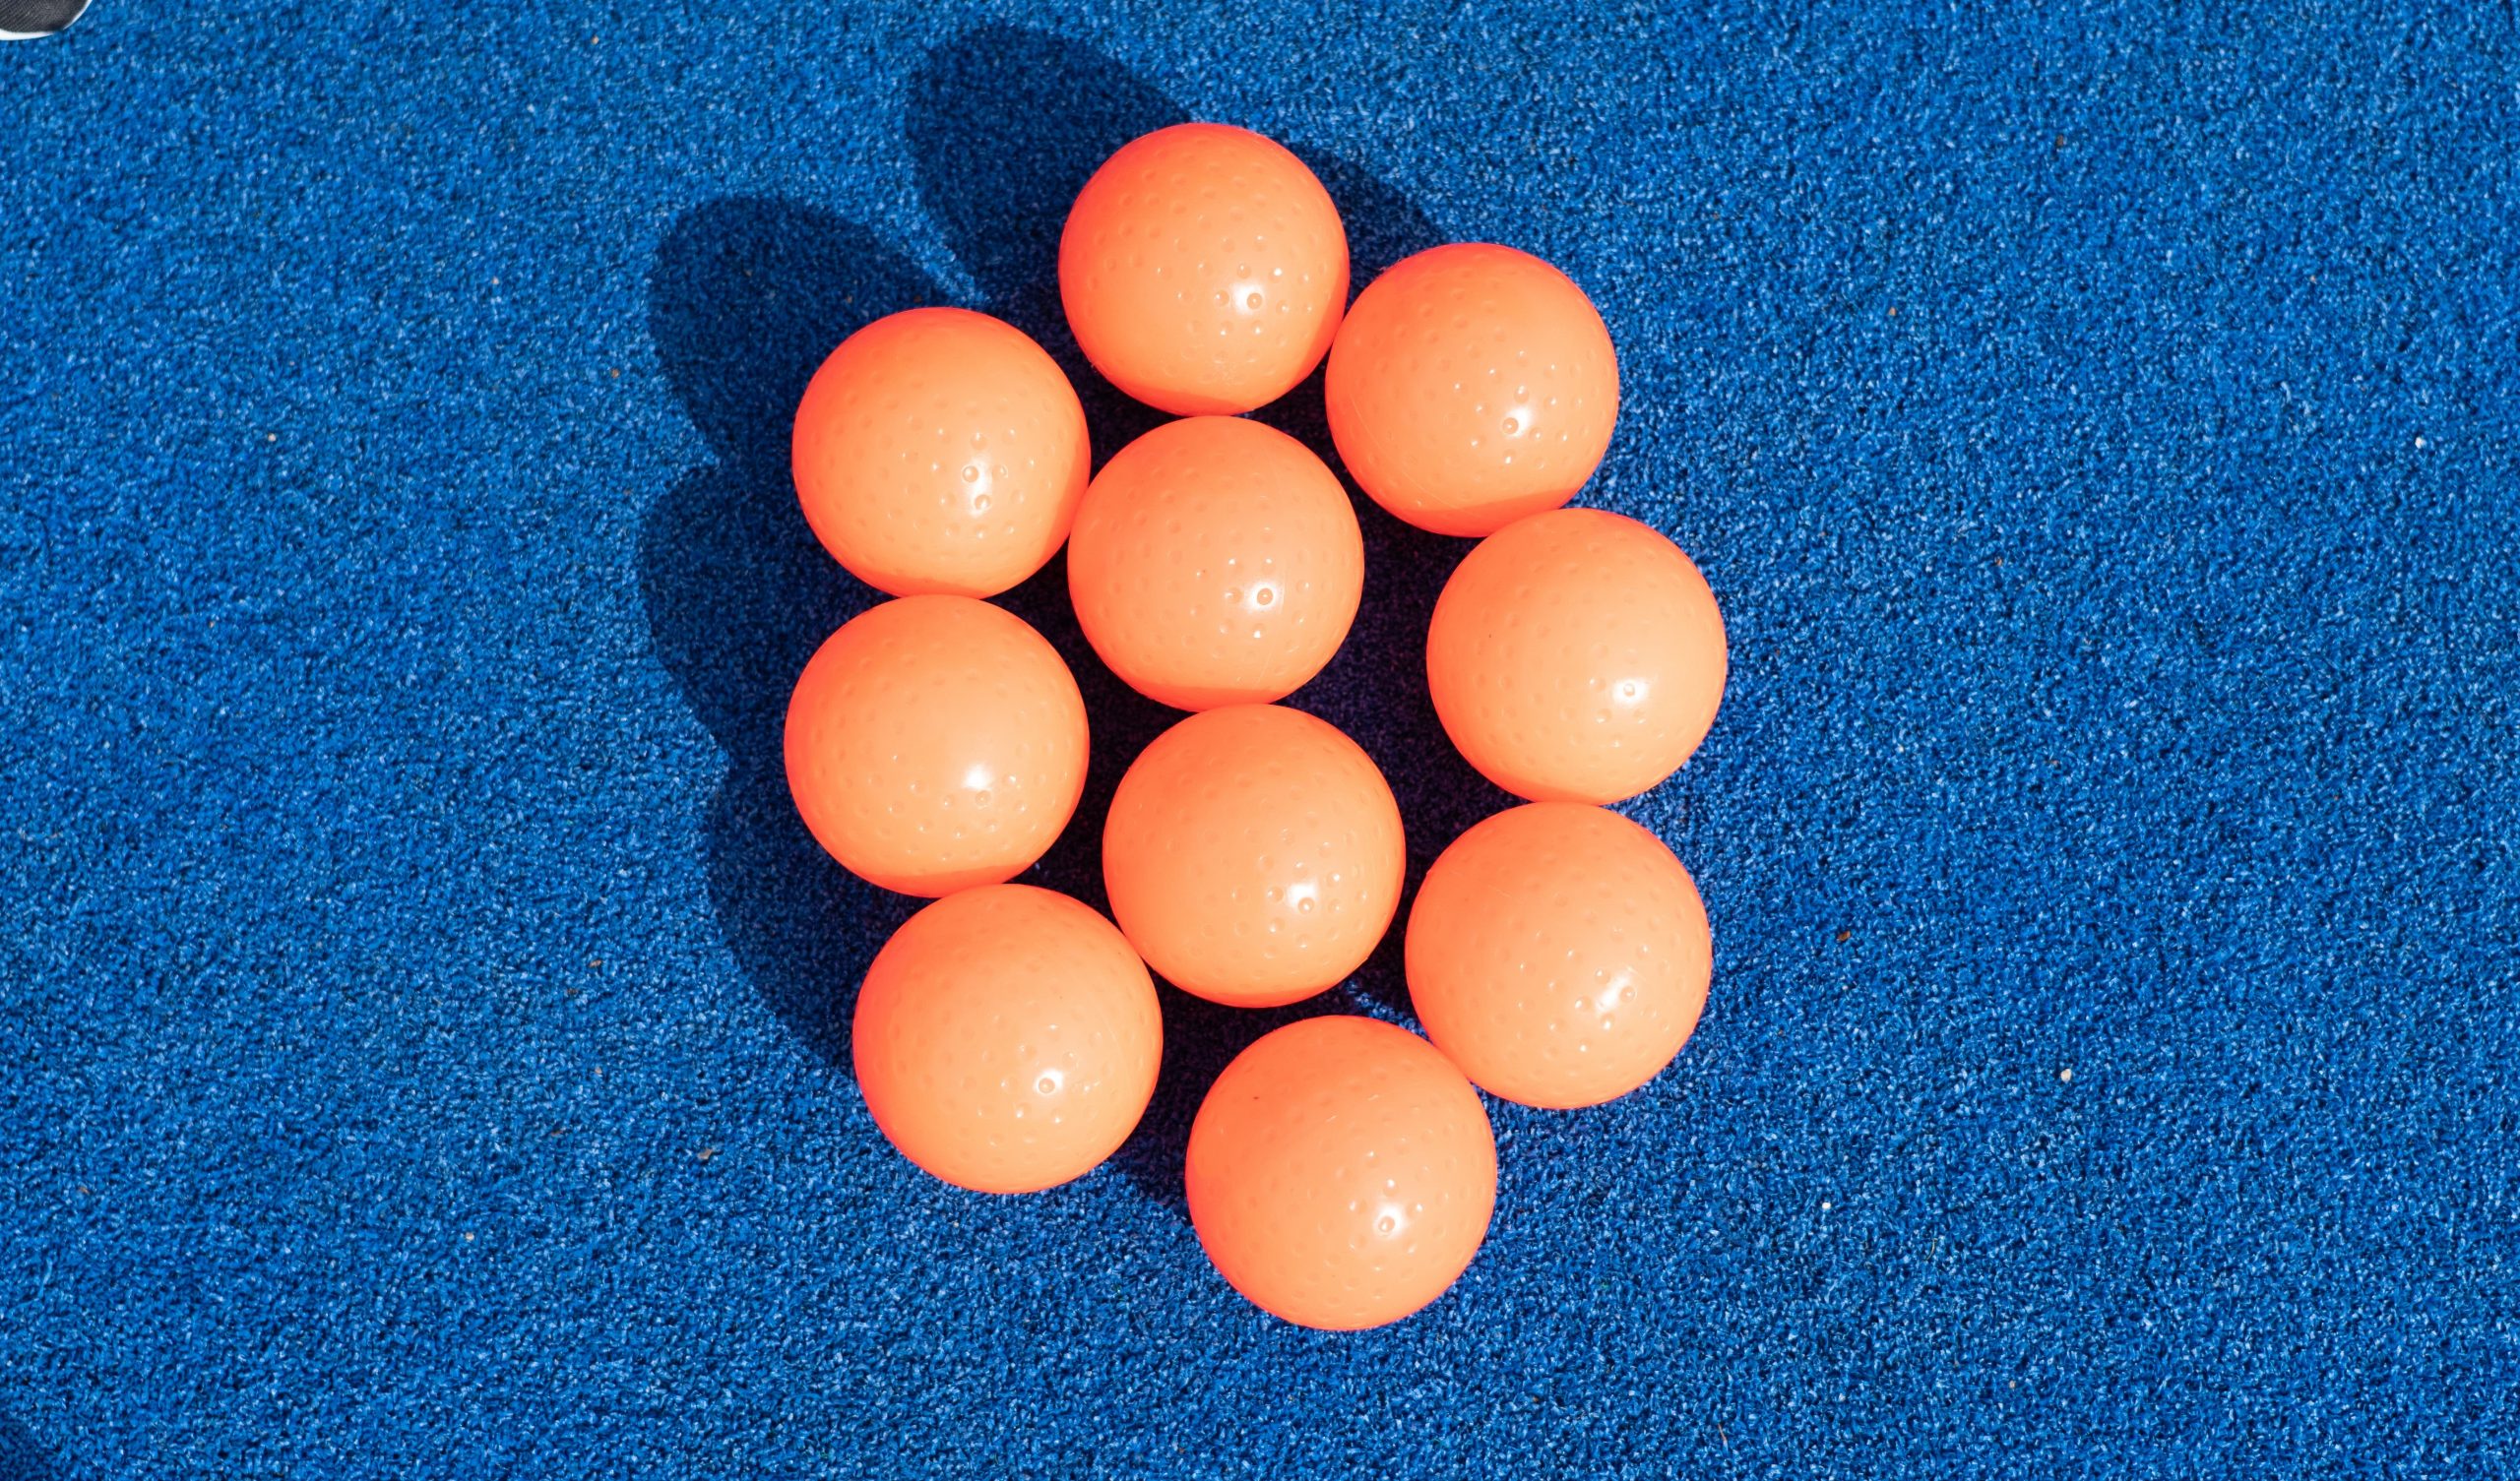 10 bolas o pelotas naranjas de hockey hierba sobre el campo de césped artificial azul